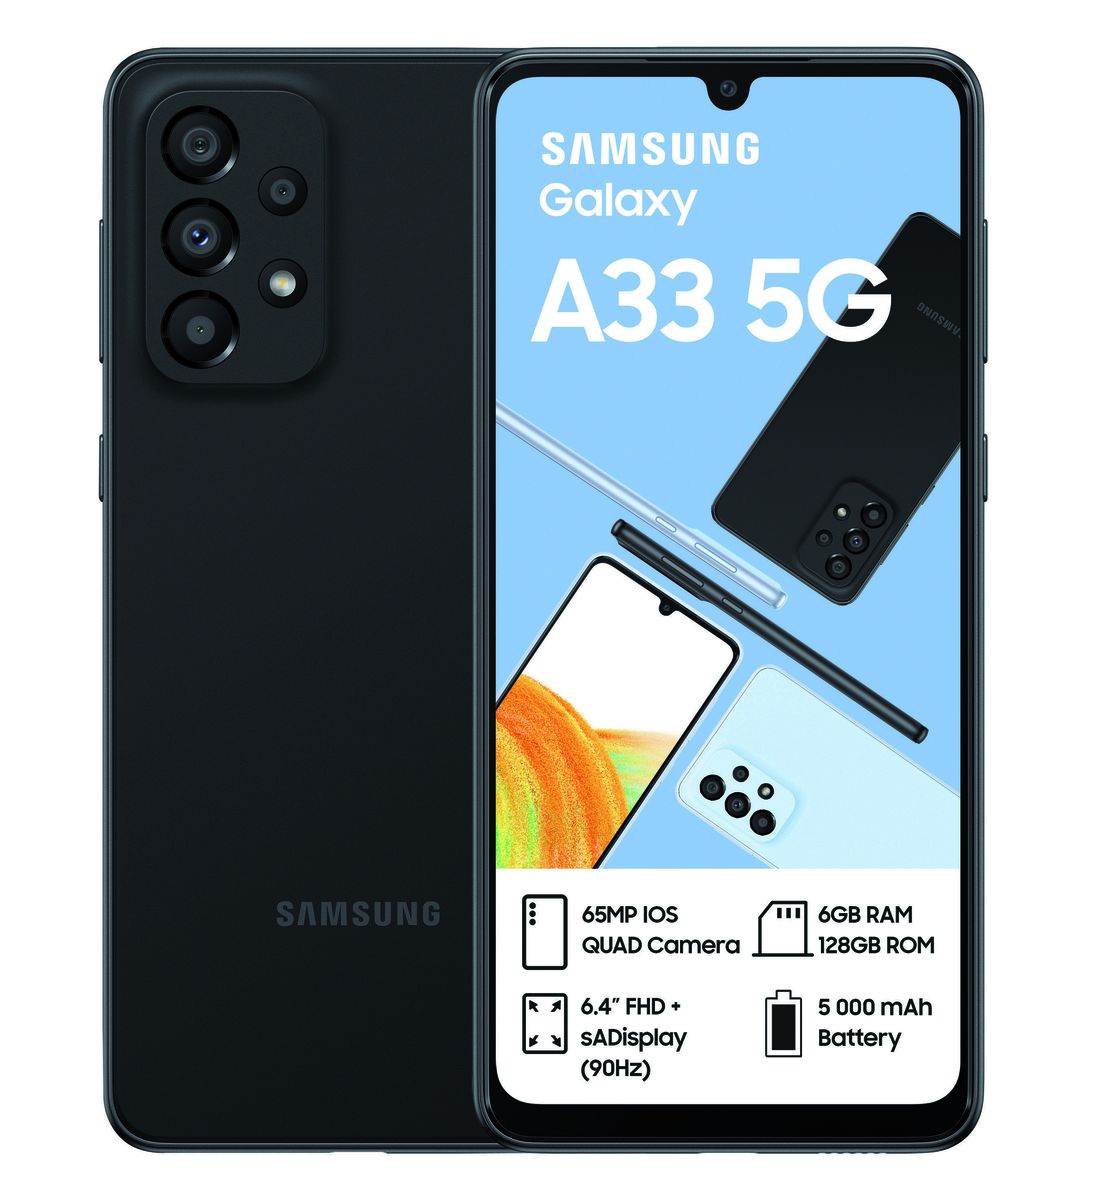 Samsung Galaxy A33 5G - 128GB Dual Sim - Awesome Black - Refurbished